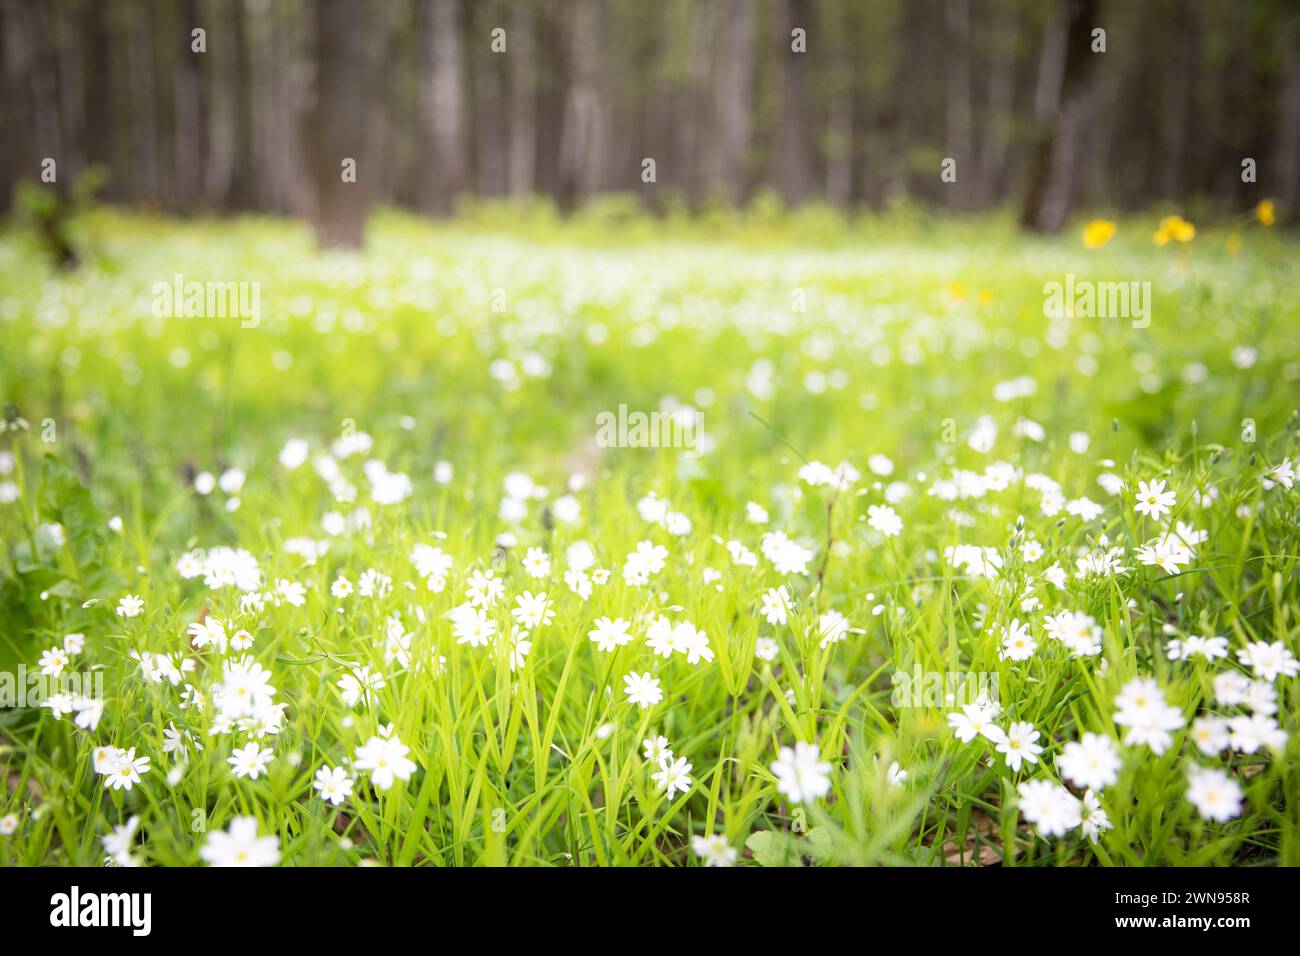 Hintergrund mit einer sonnigen grünen Waldlichtung mit weißen Kerzen und kleinen Blumen. Stockfoto